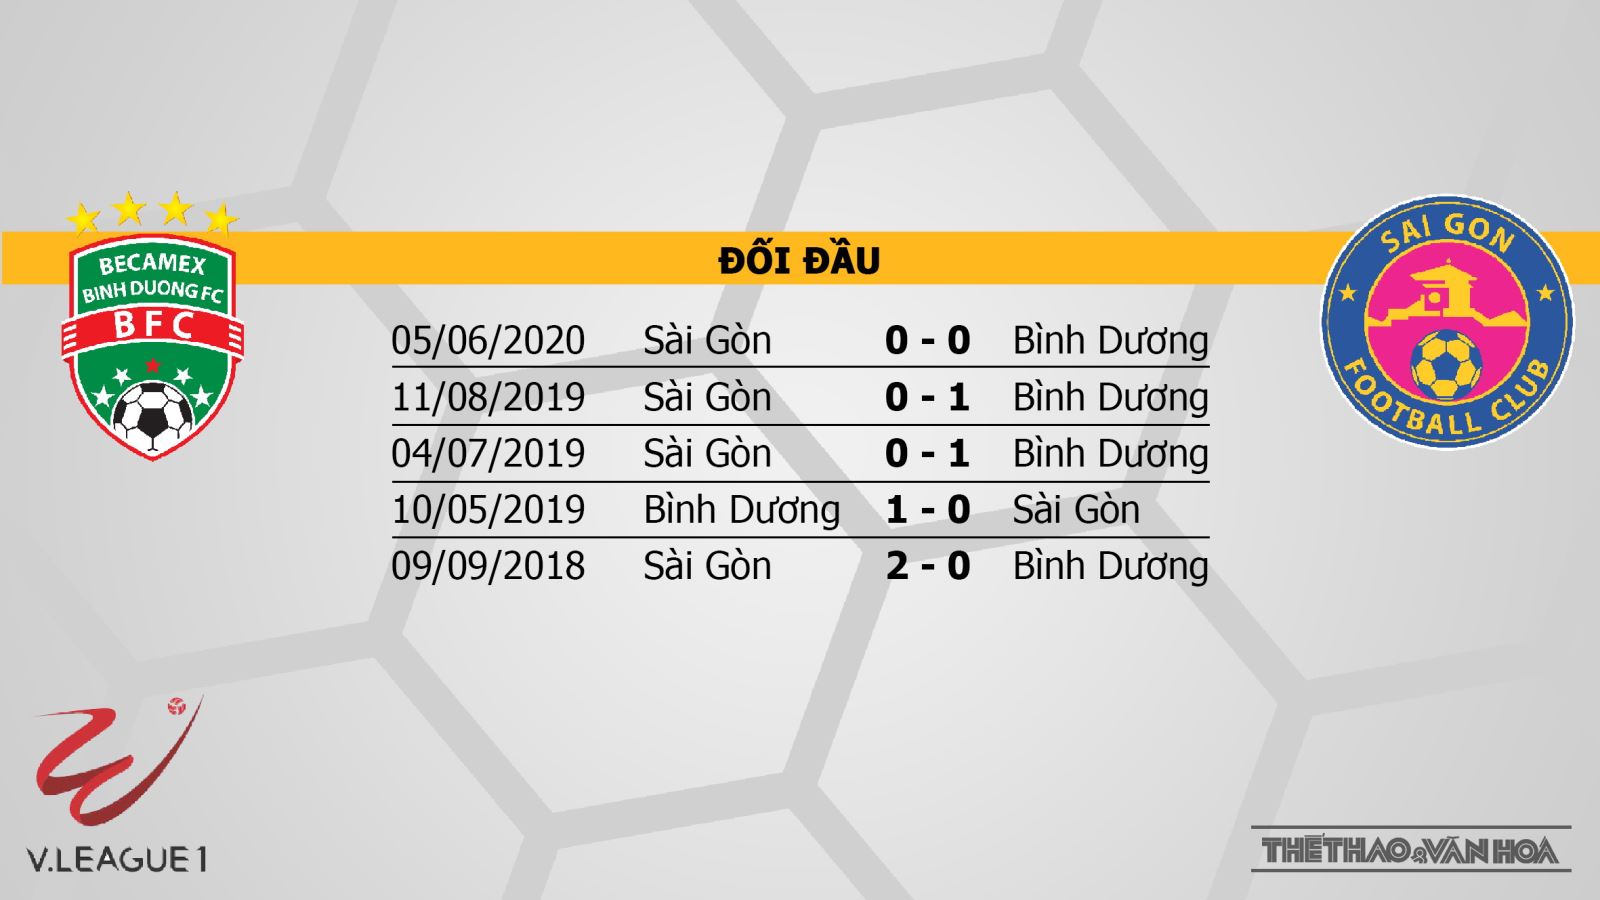 Bình Dương vs Sài Gòn, Bình Dương, Sài Gòn, nhận định bóng đá Bình Dương vs Sài Gòn, trực tiếp Bình Dương vs Sài Gòn, kèo bóng đá, dự đoán Bình Dương vs Sài Gòn